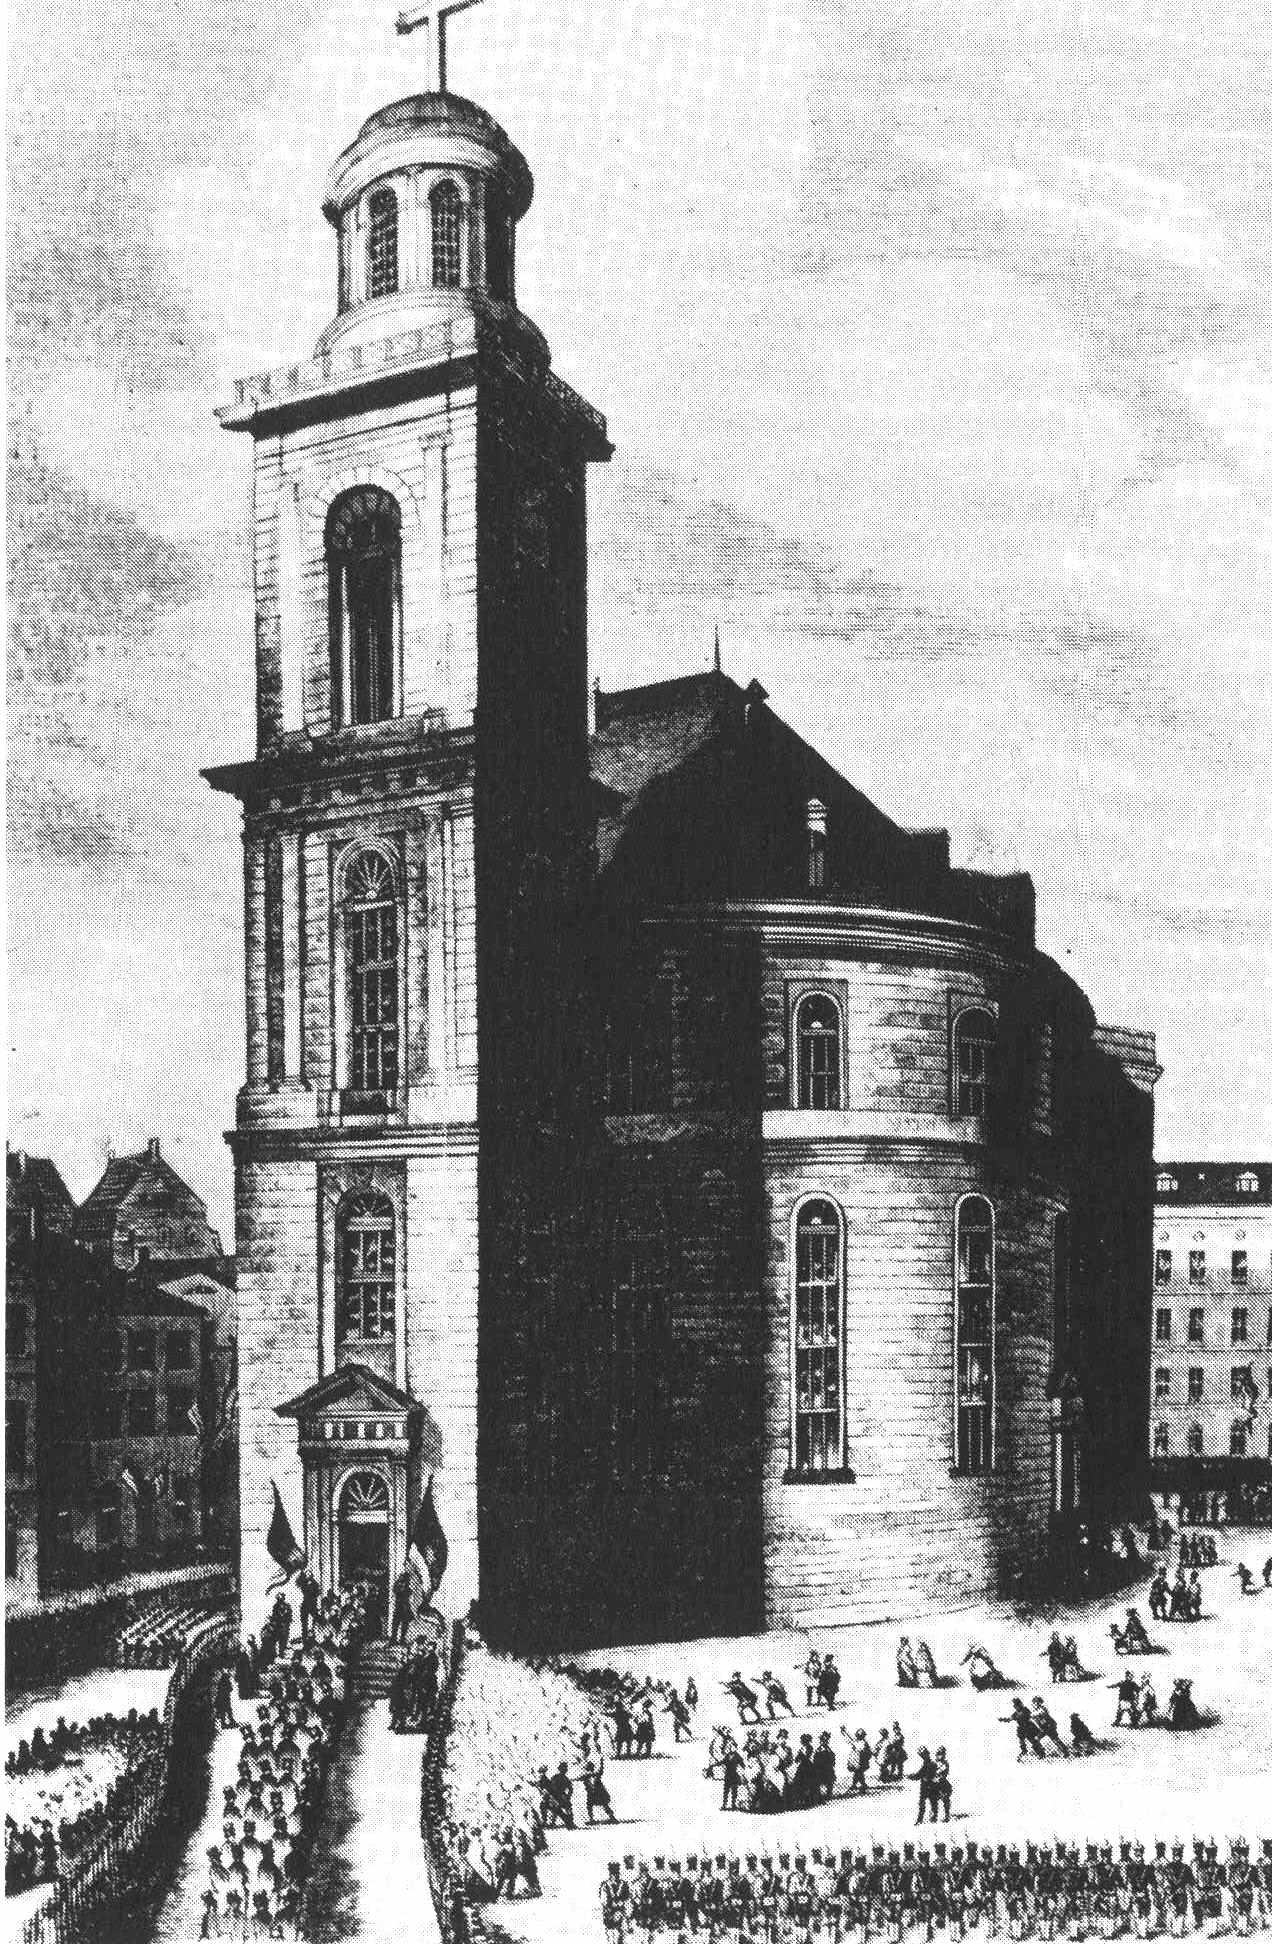 Die Frankfurter Paulskirche als Sinnbild für den bürgerlichen Ursprung - schon um 1848 wurde in der Nationalversammlung über betriebliche Mitbestimmung debattiert